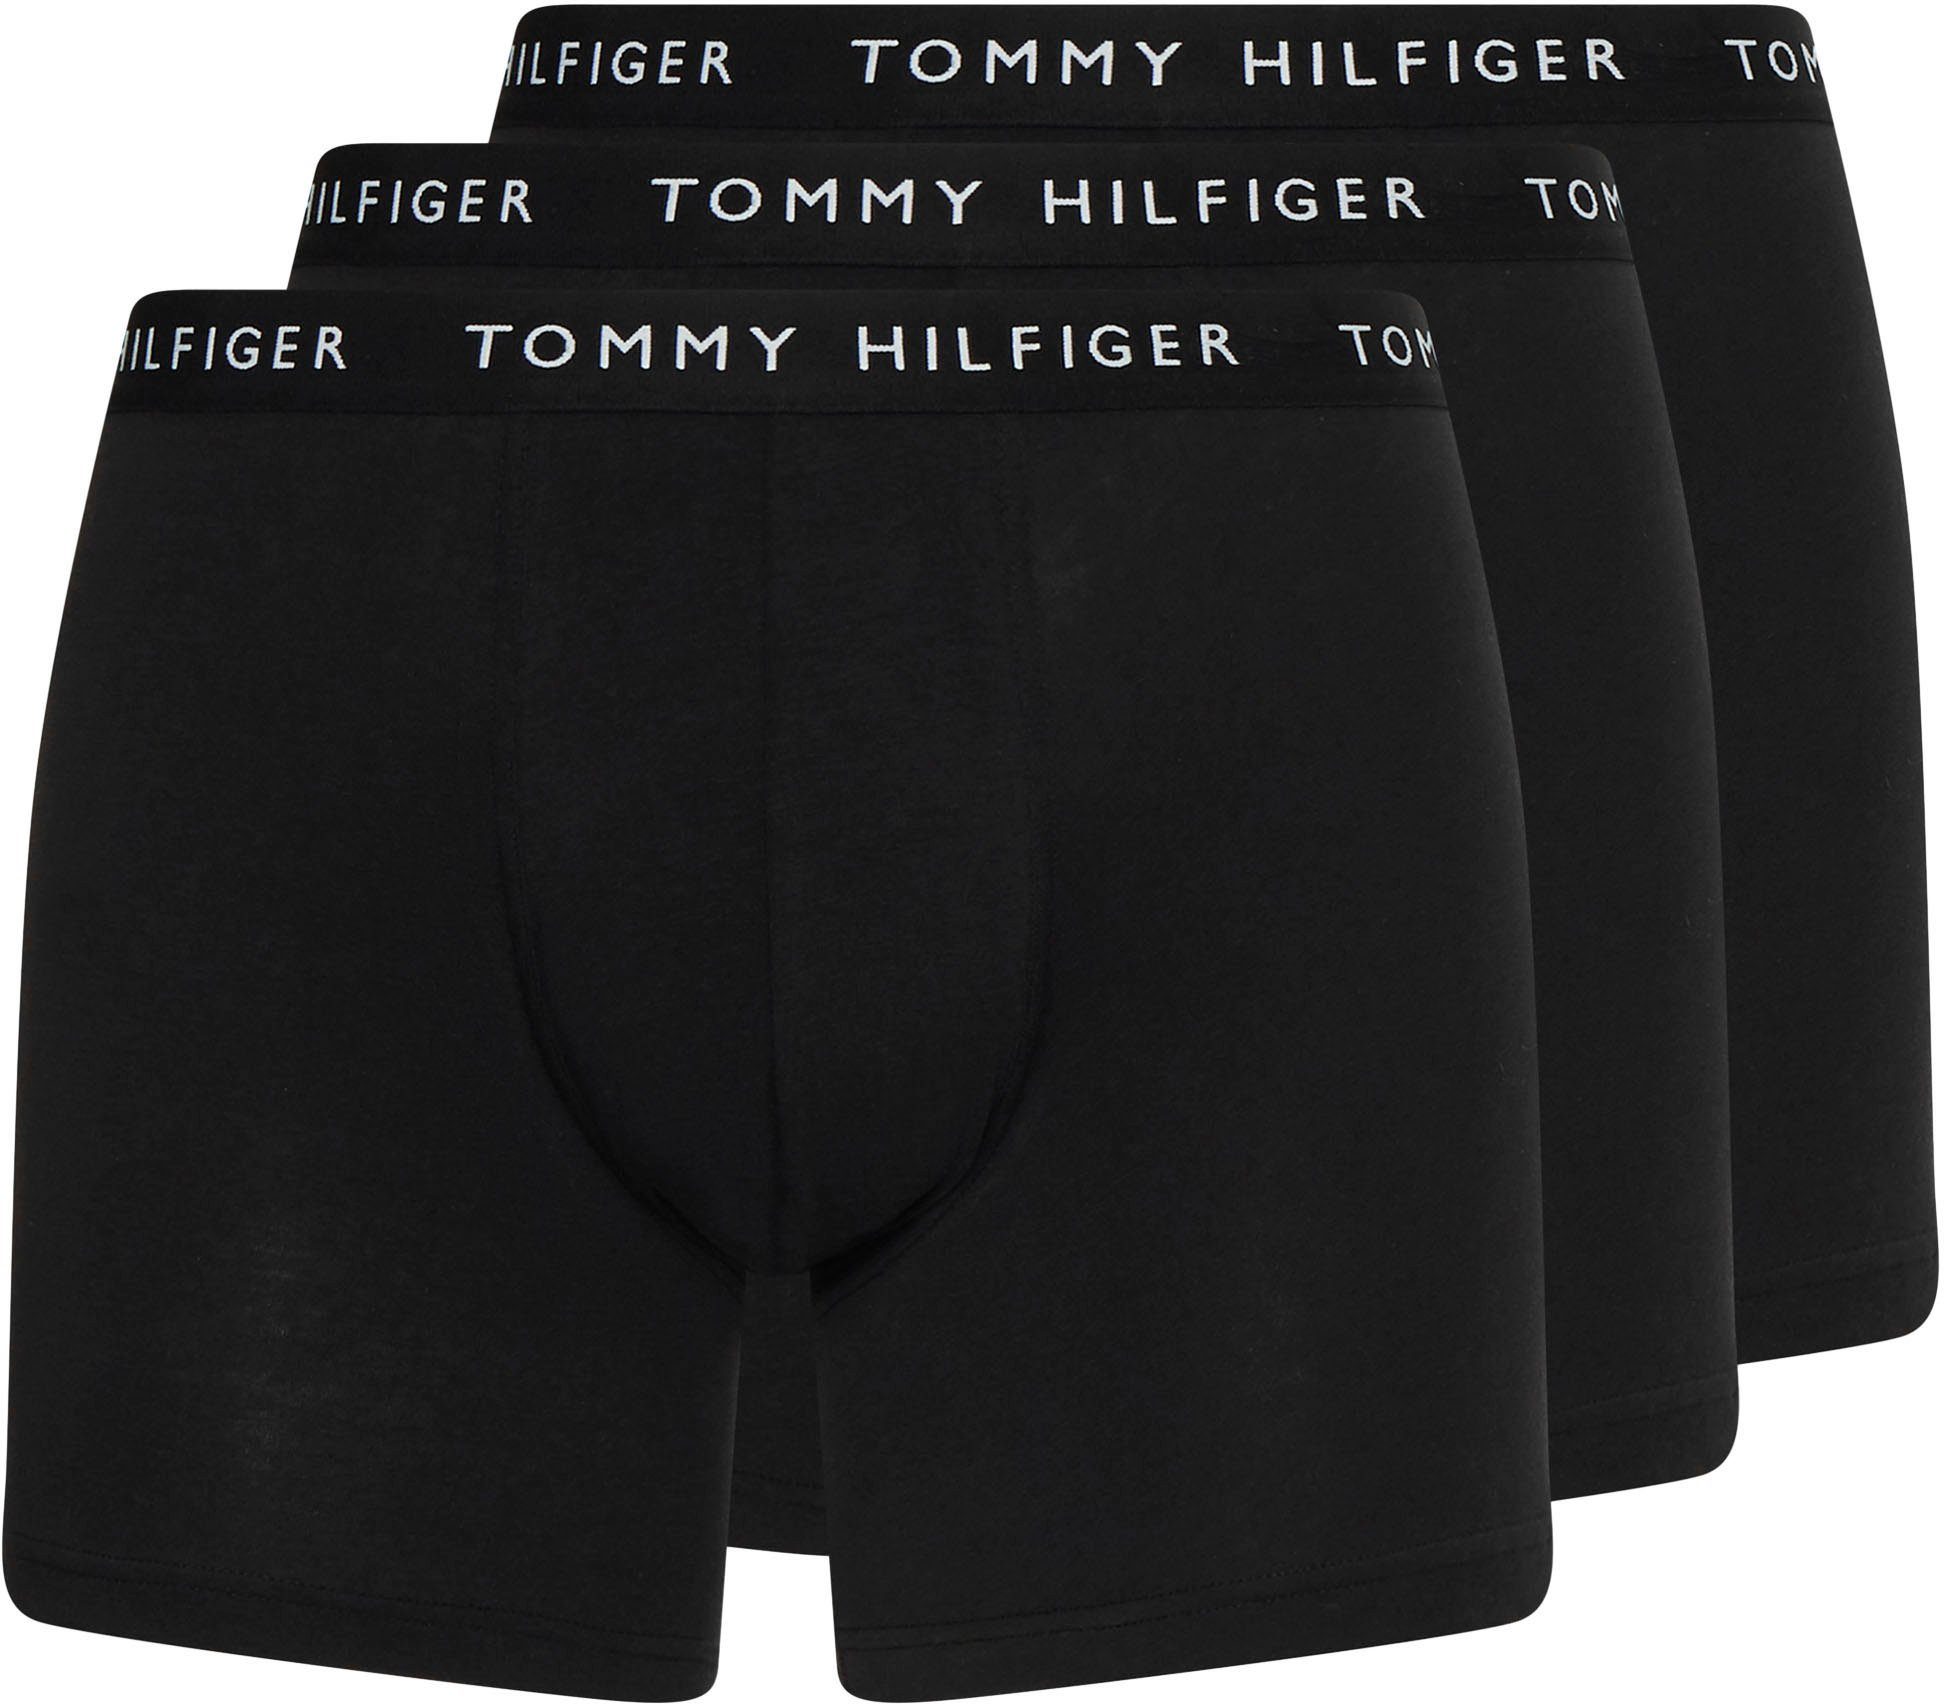 Hilfiger schwarz, Underwear schwarz, Boxer Wäschebund Tommy schwarz 3er-Pack) (Packung, mit